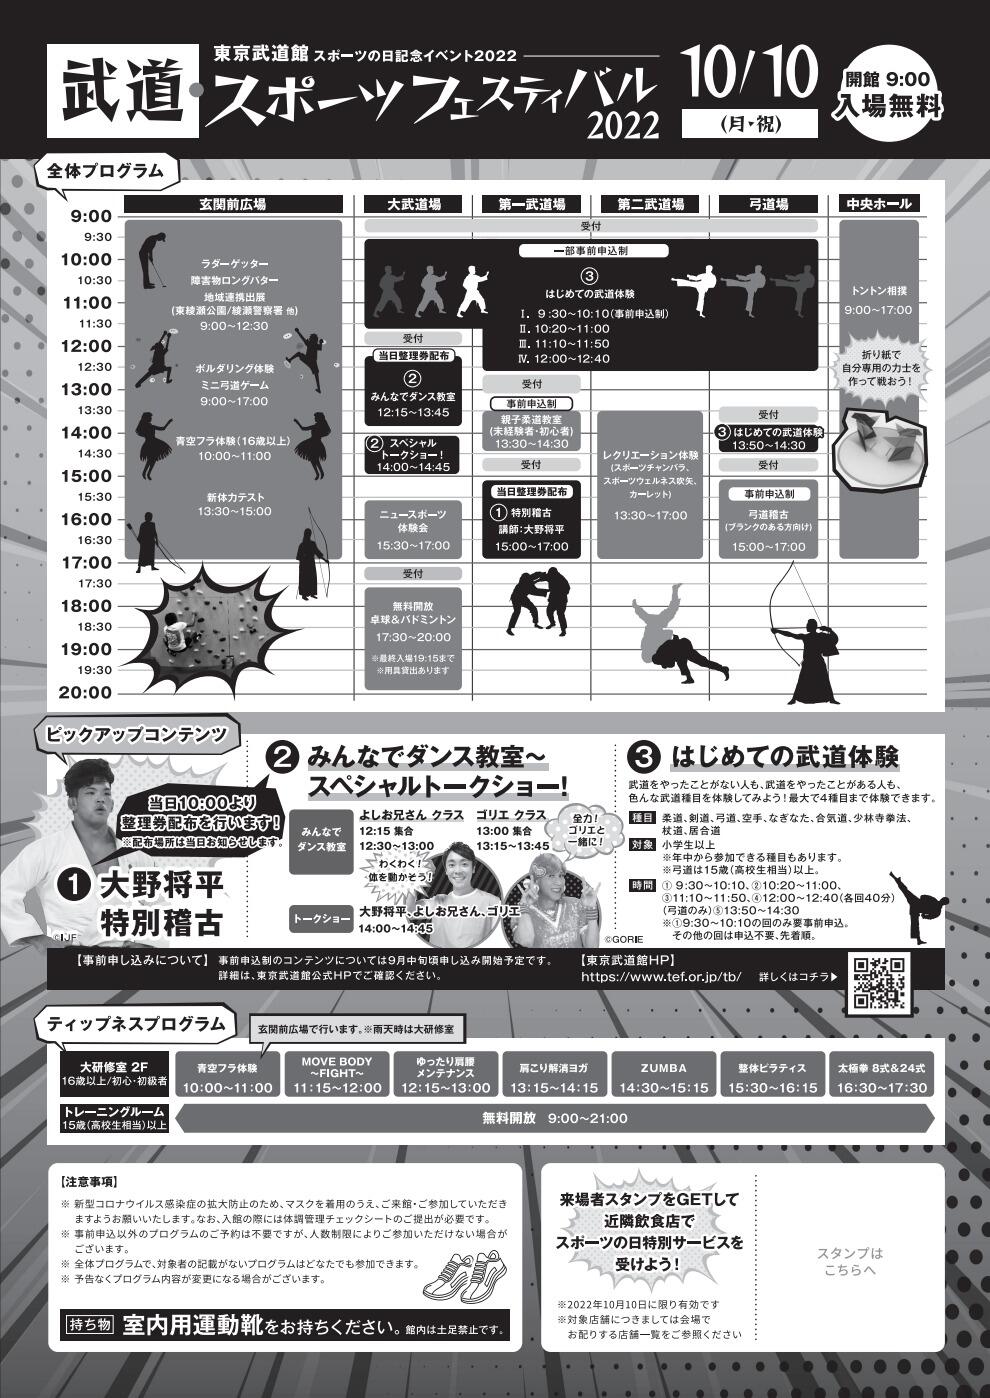 武道・スポーツフェスティバル2022「はじめての武道体験」【合気道】